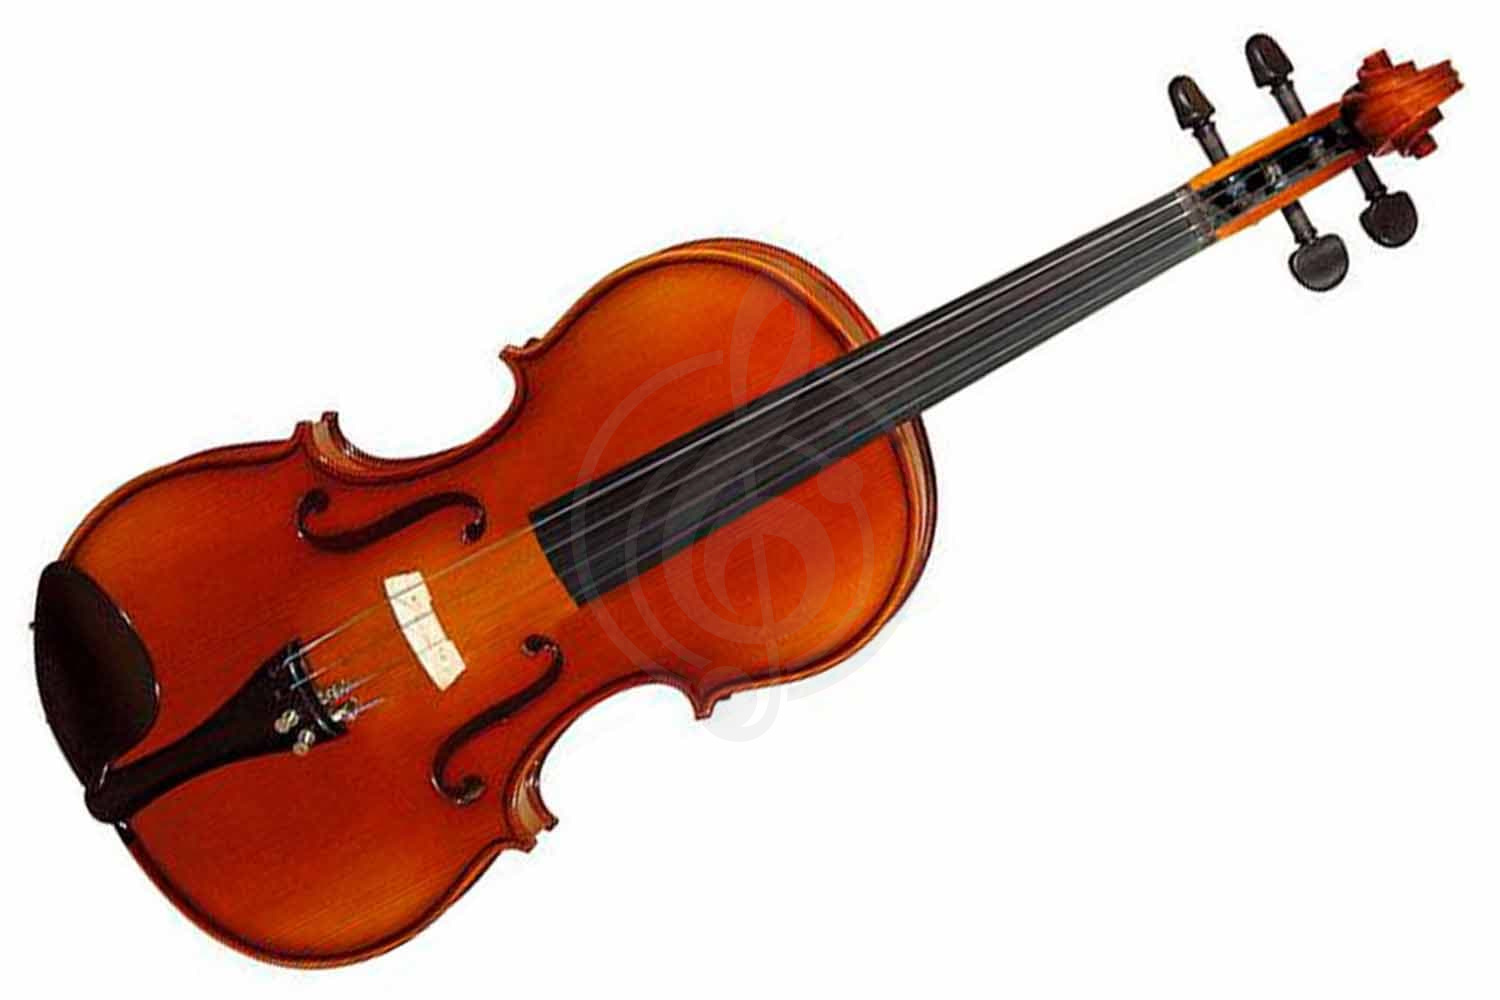 Скрипка 1/4 Скрипки 1/4 Grand Grand GV-415 скрипка 1/4 (Комплект:смычок, футляр, ремень, канифоль) GV-415 - фото 1